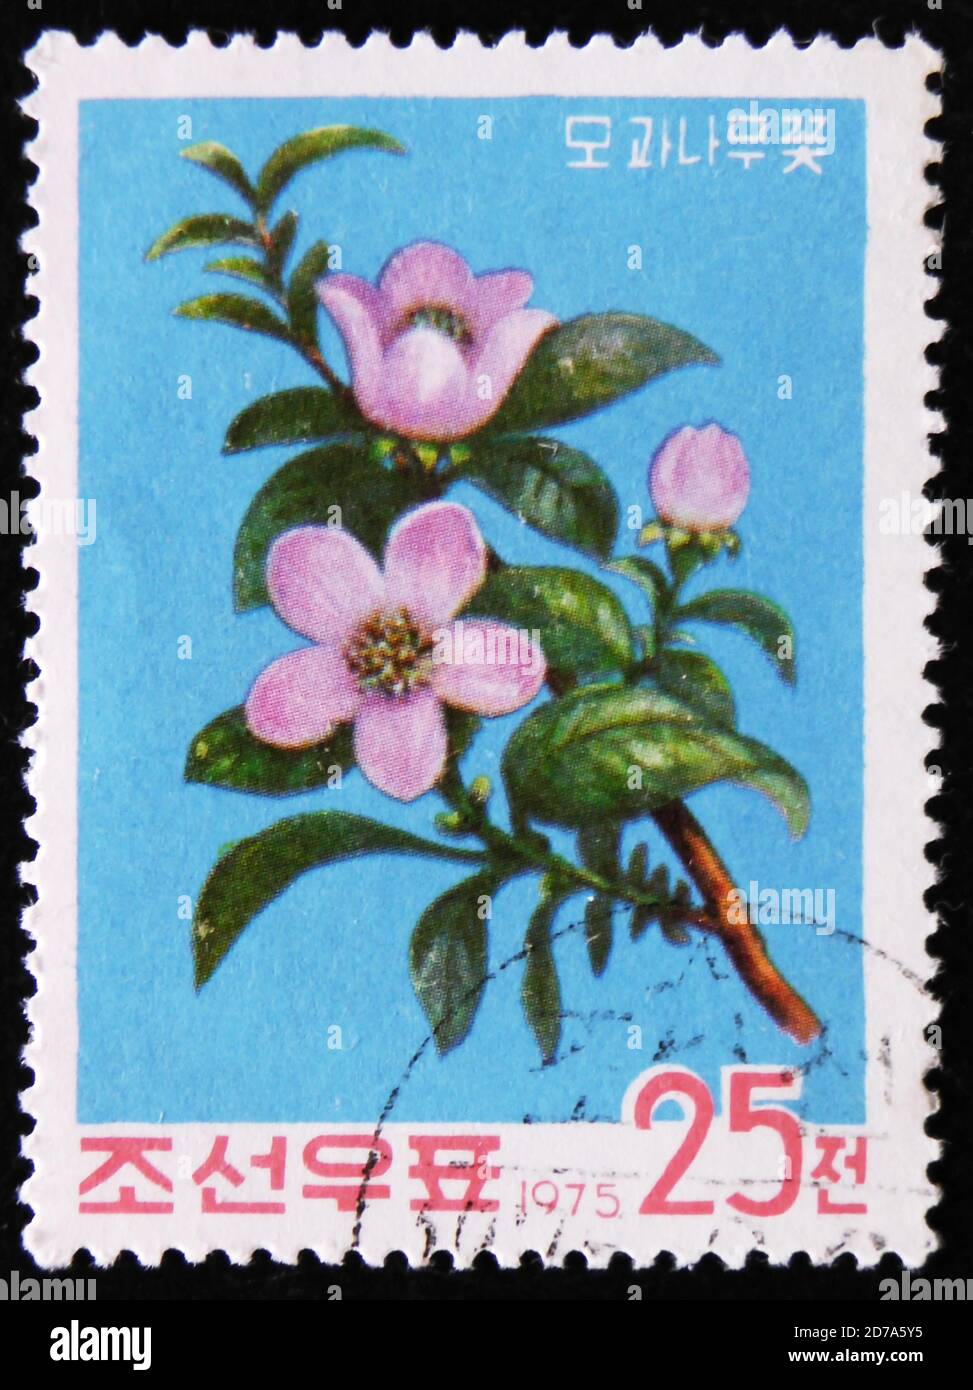 MOSCOU, RUSSIE - 2 AVRIL 2017 : un timbre de poste imprimé en République de Corée montre des coings chinois de fleurs, série, vers 1975 Banque D'Images